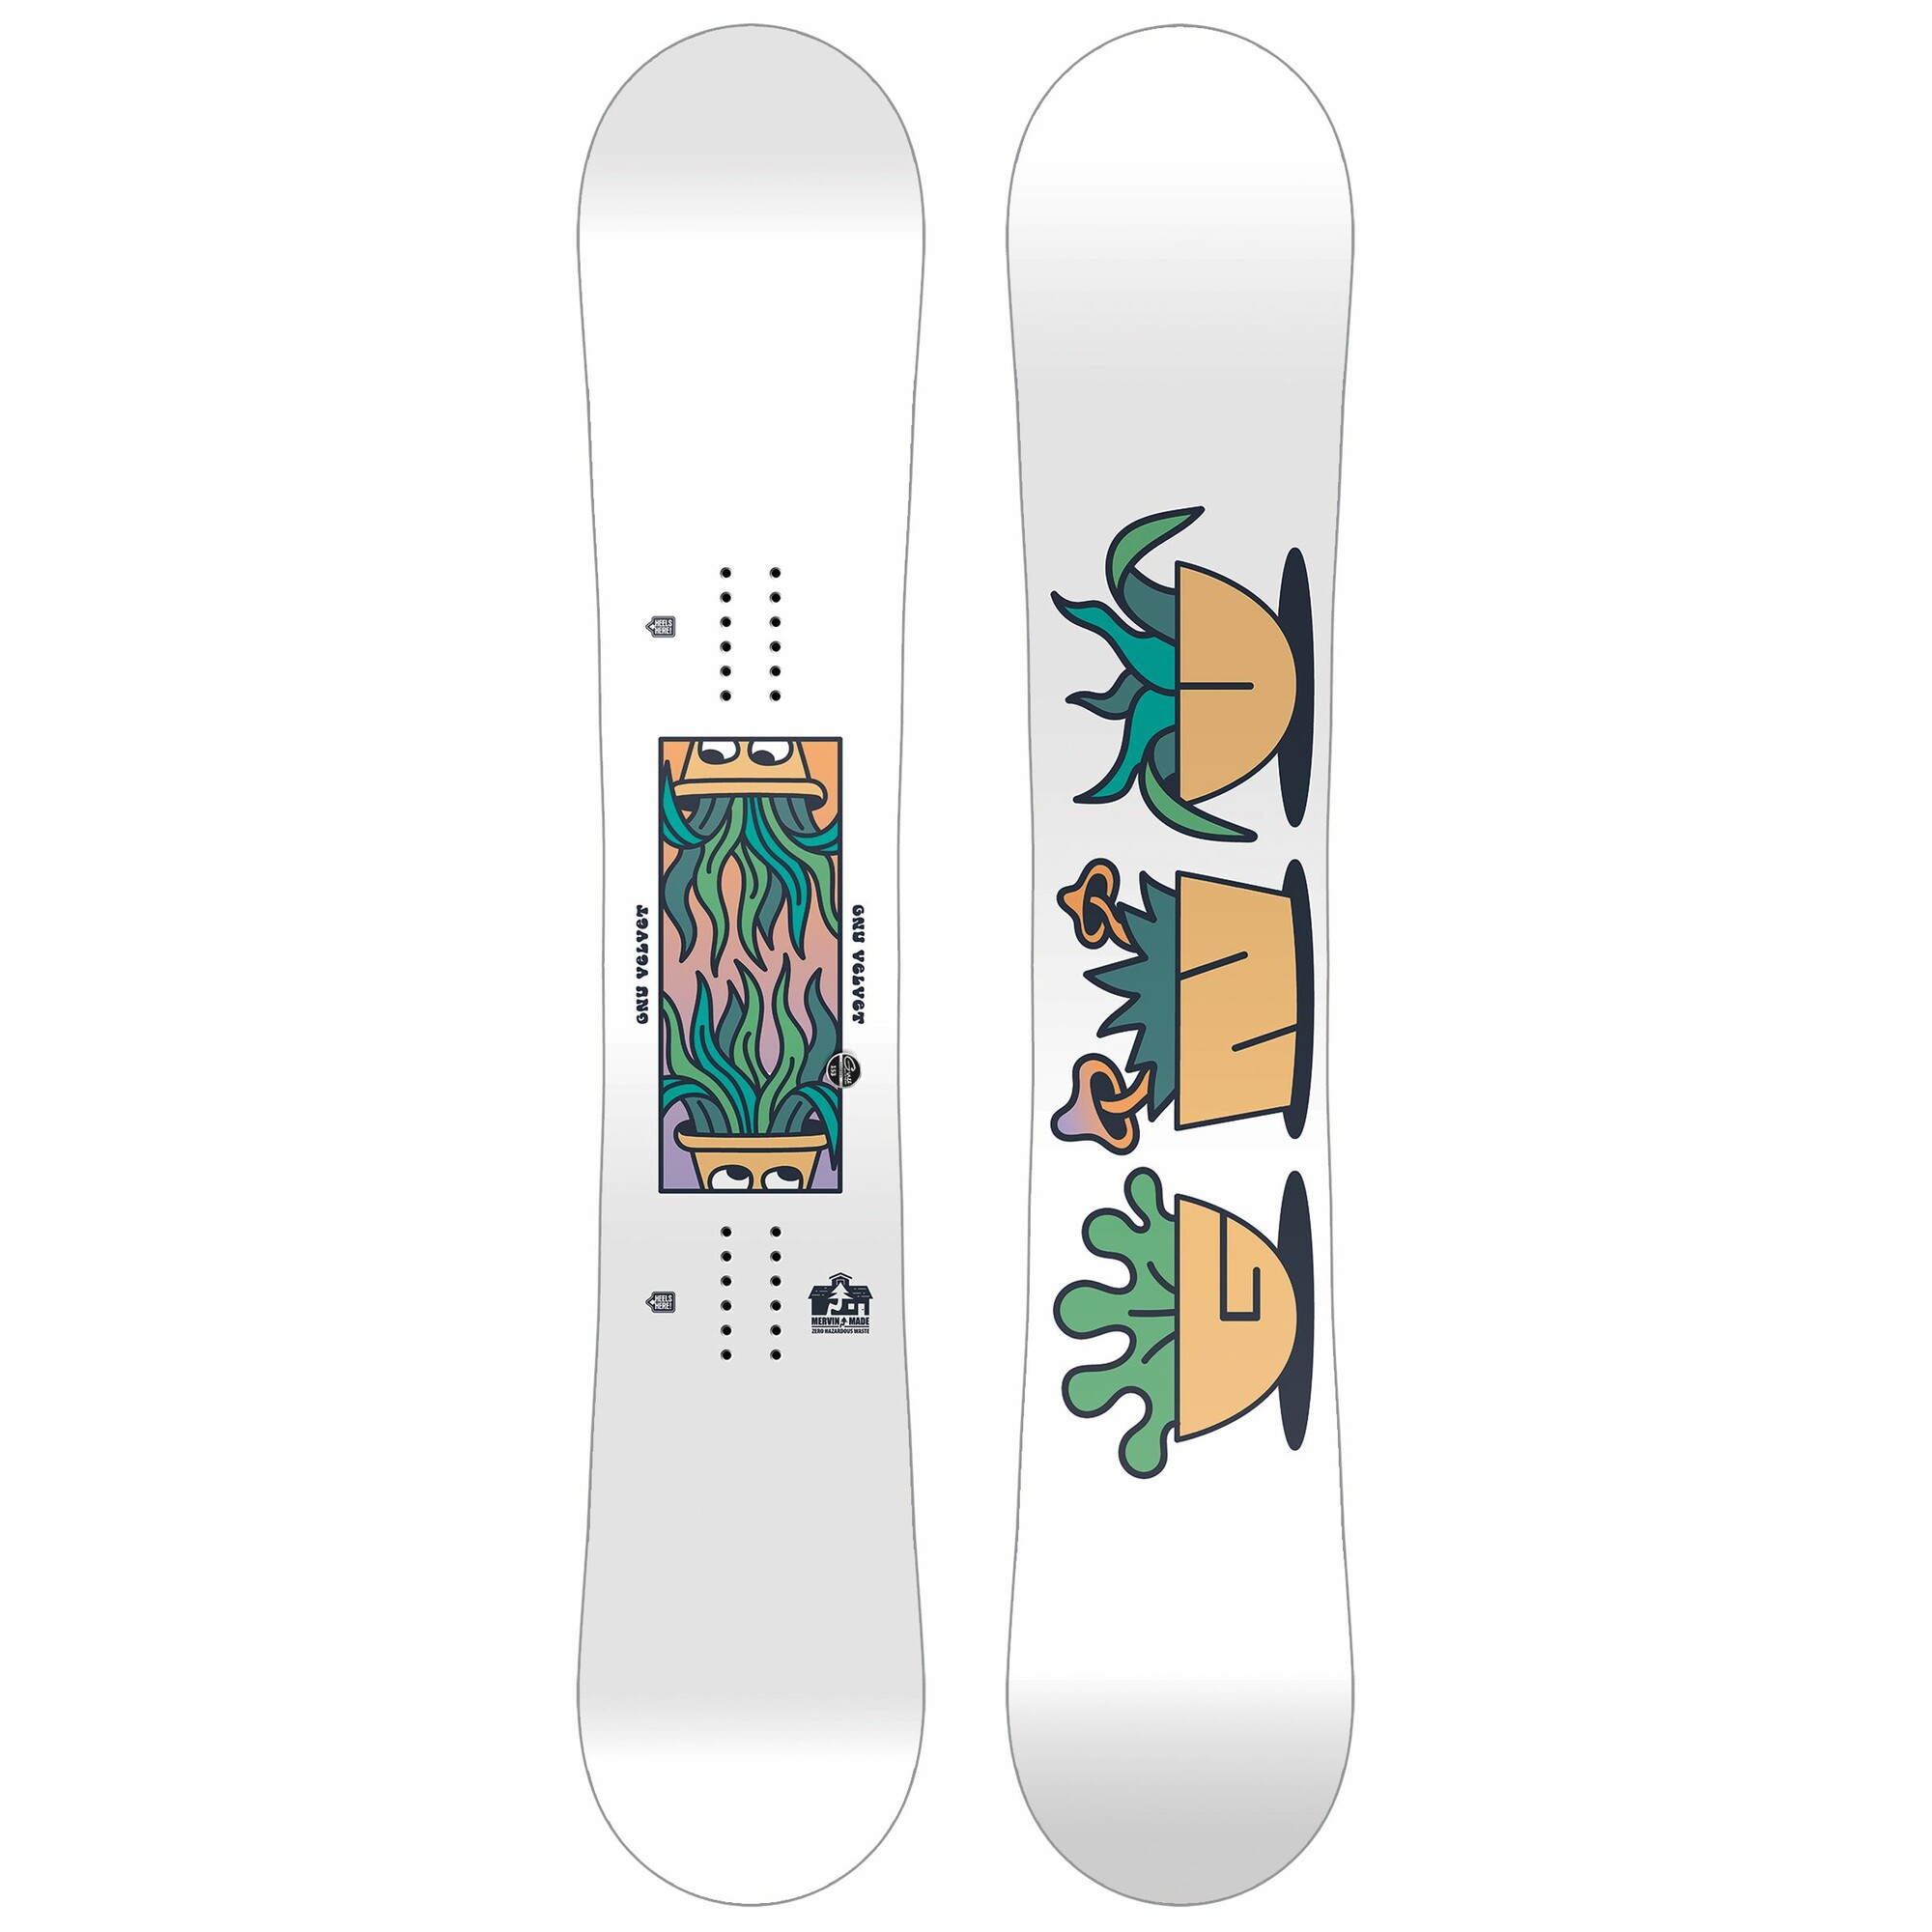 Gnu Velvet snowboard